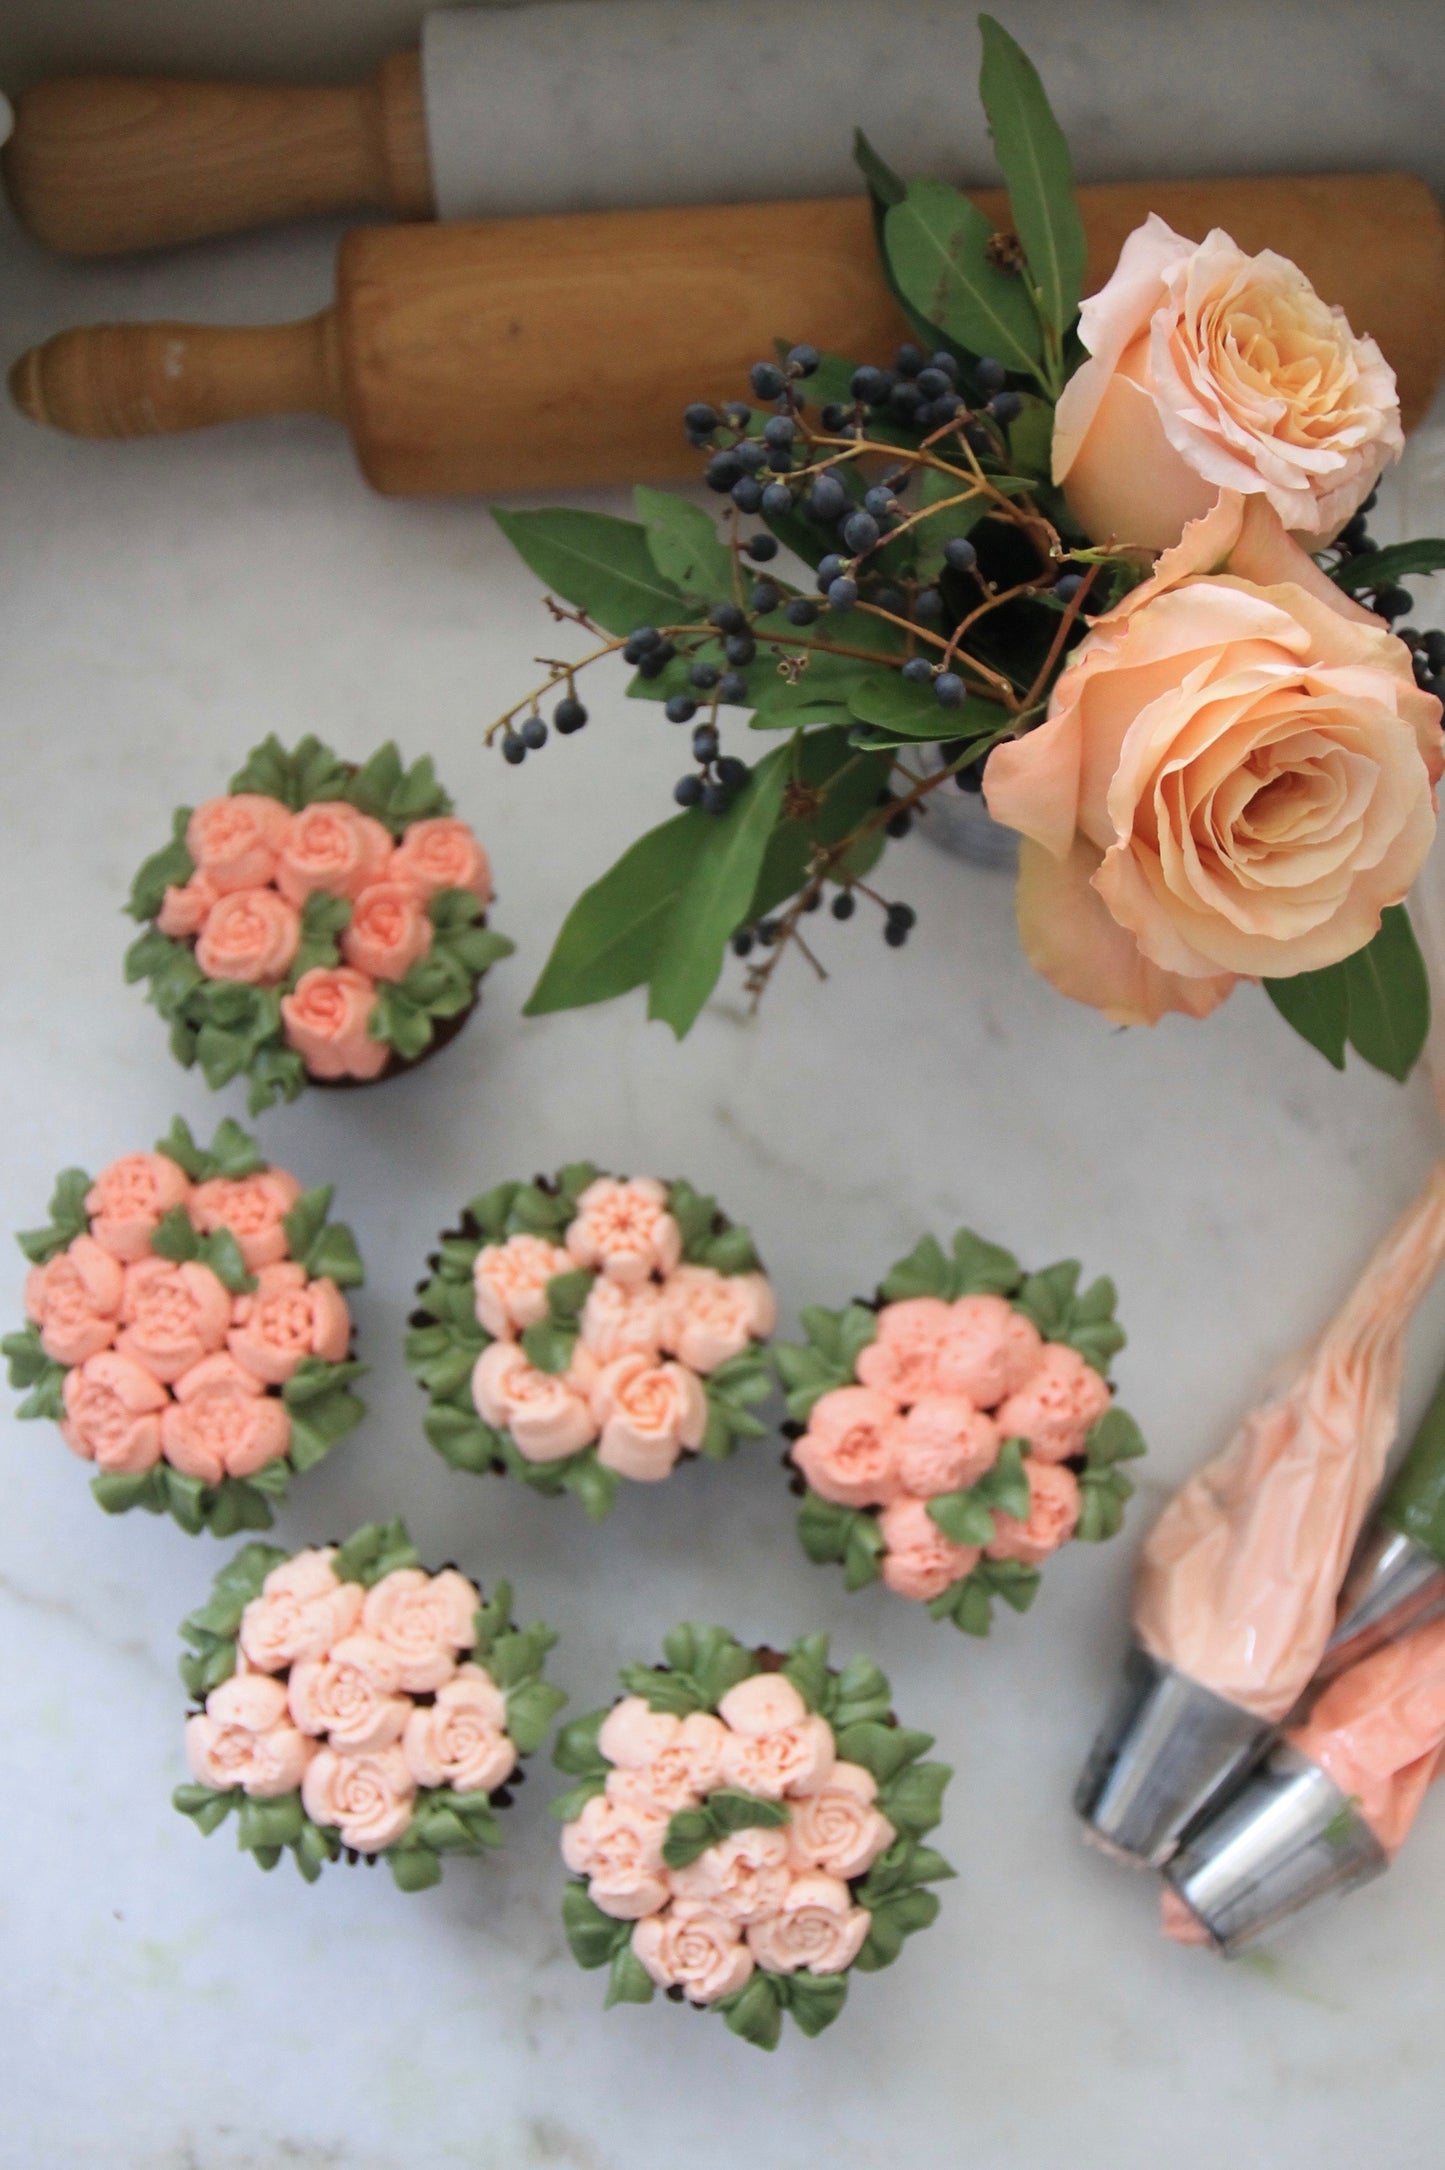 Floral Pastry Tip Sets